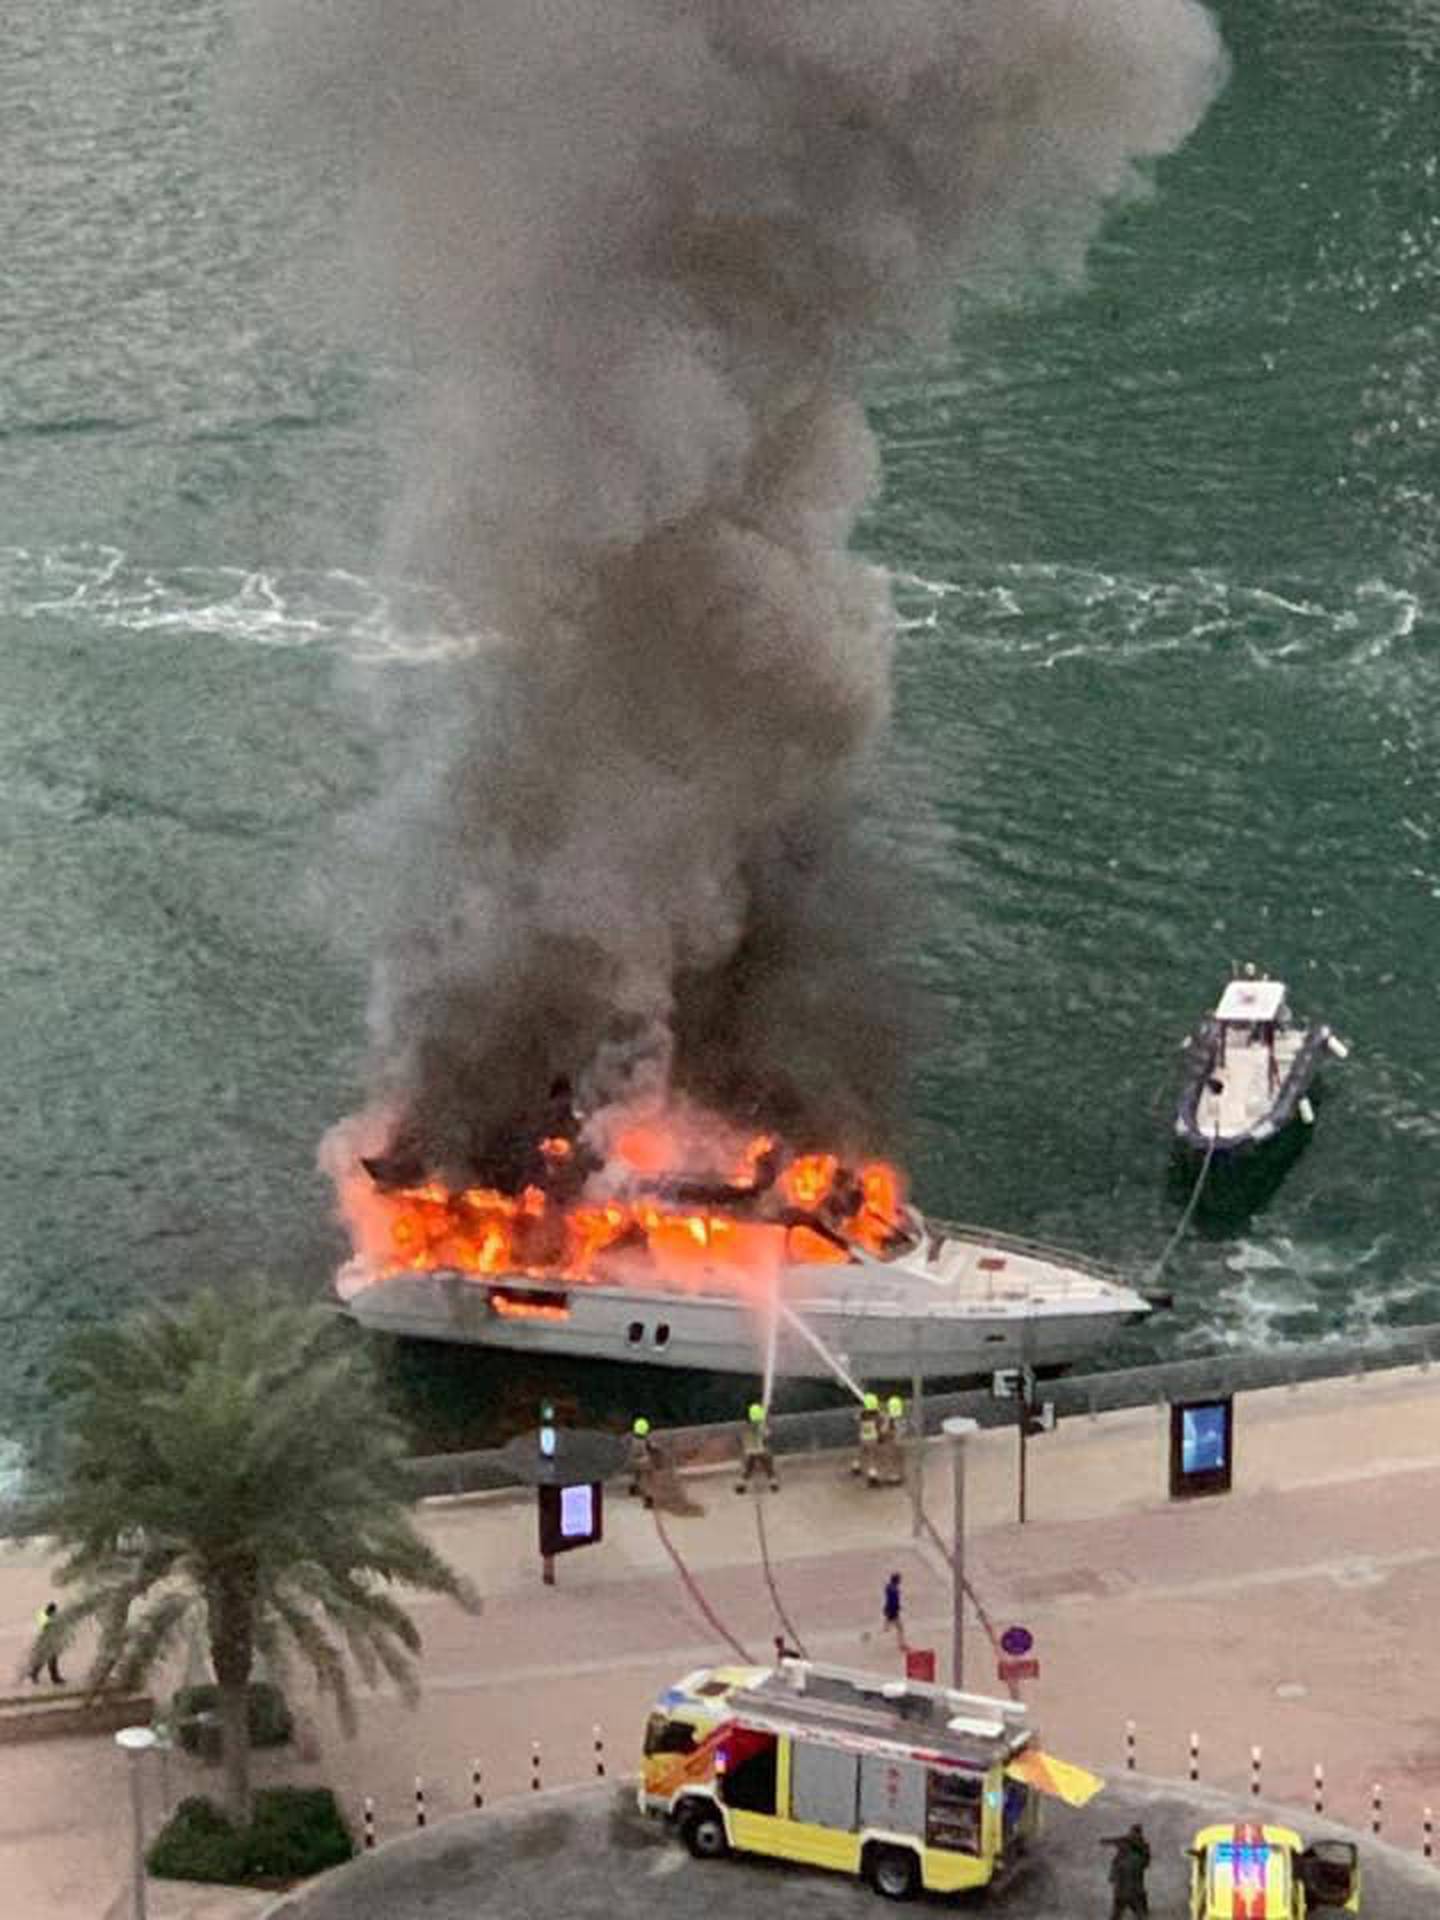 Firefighters battled the blaze from the promenade. Emma Deakin/Facebook